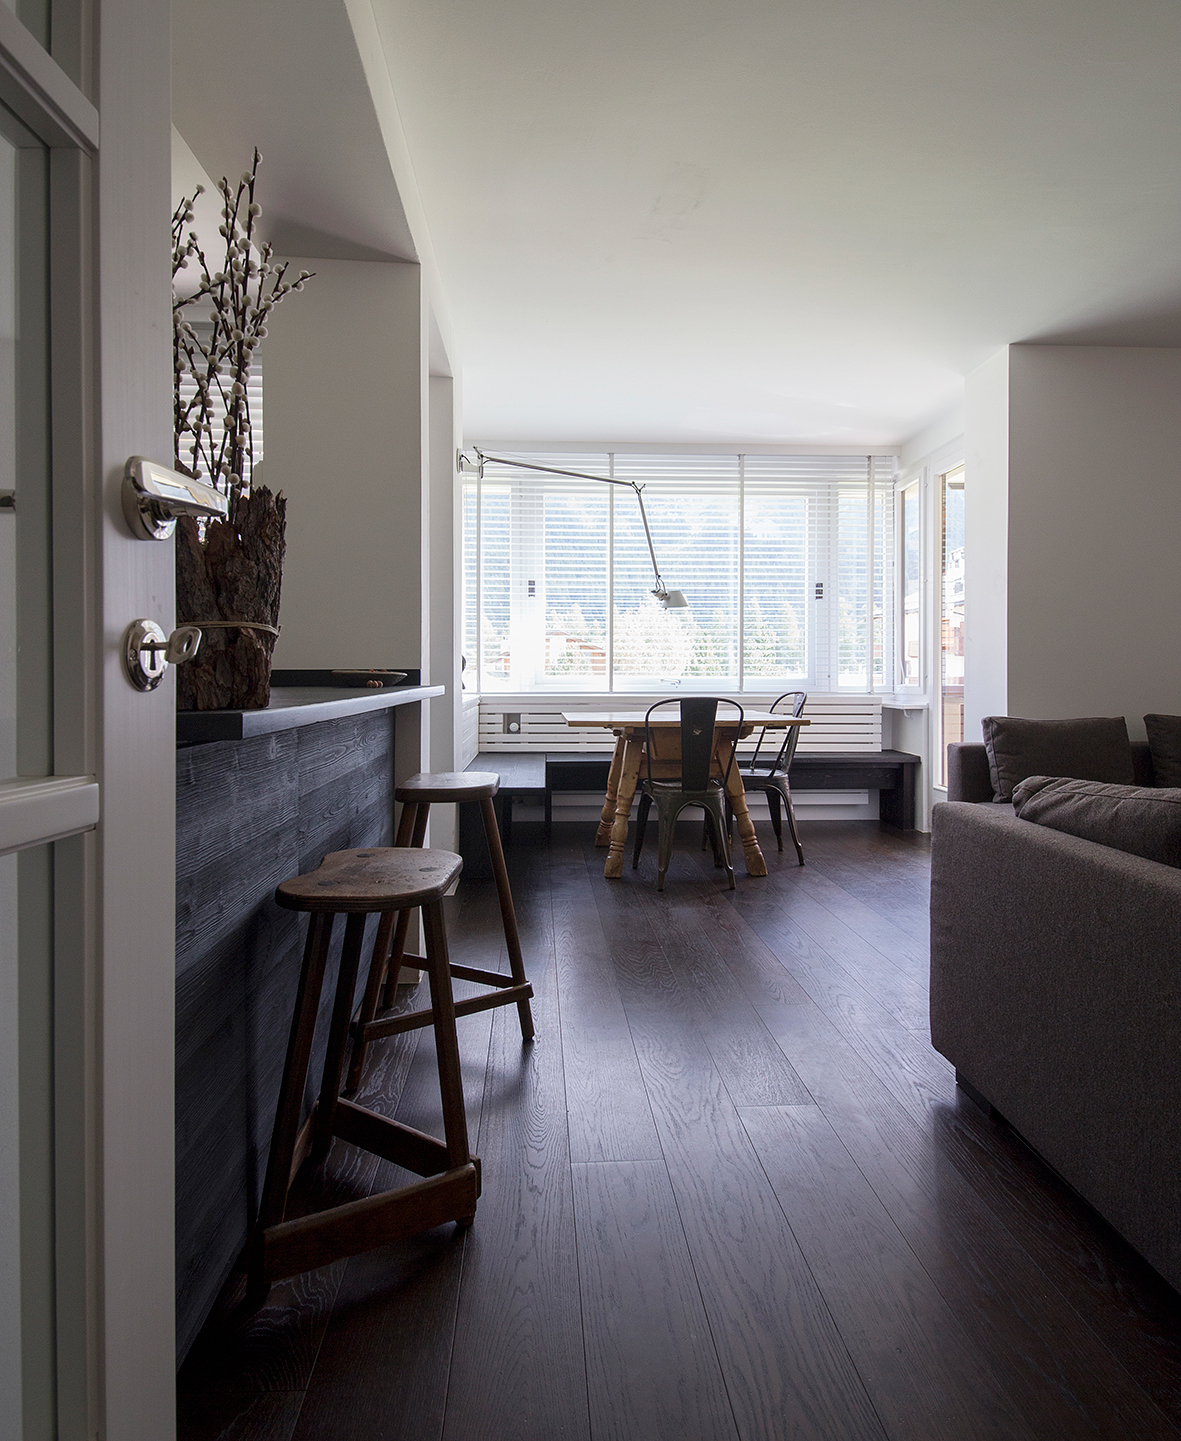 Interior mountain swiss photo design White minimal modern engadine home decor cozy kitchen